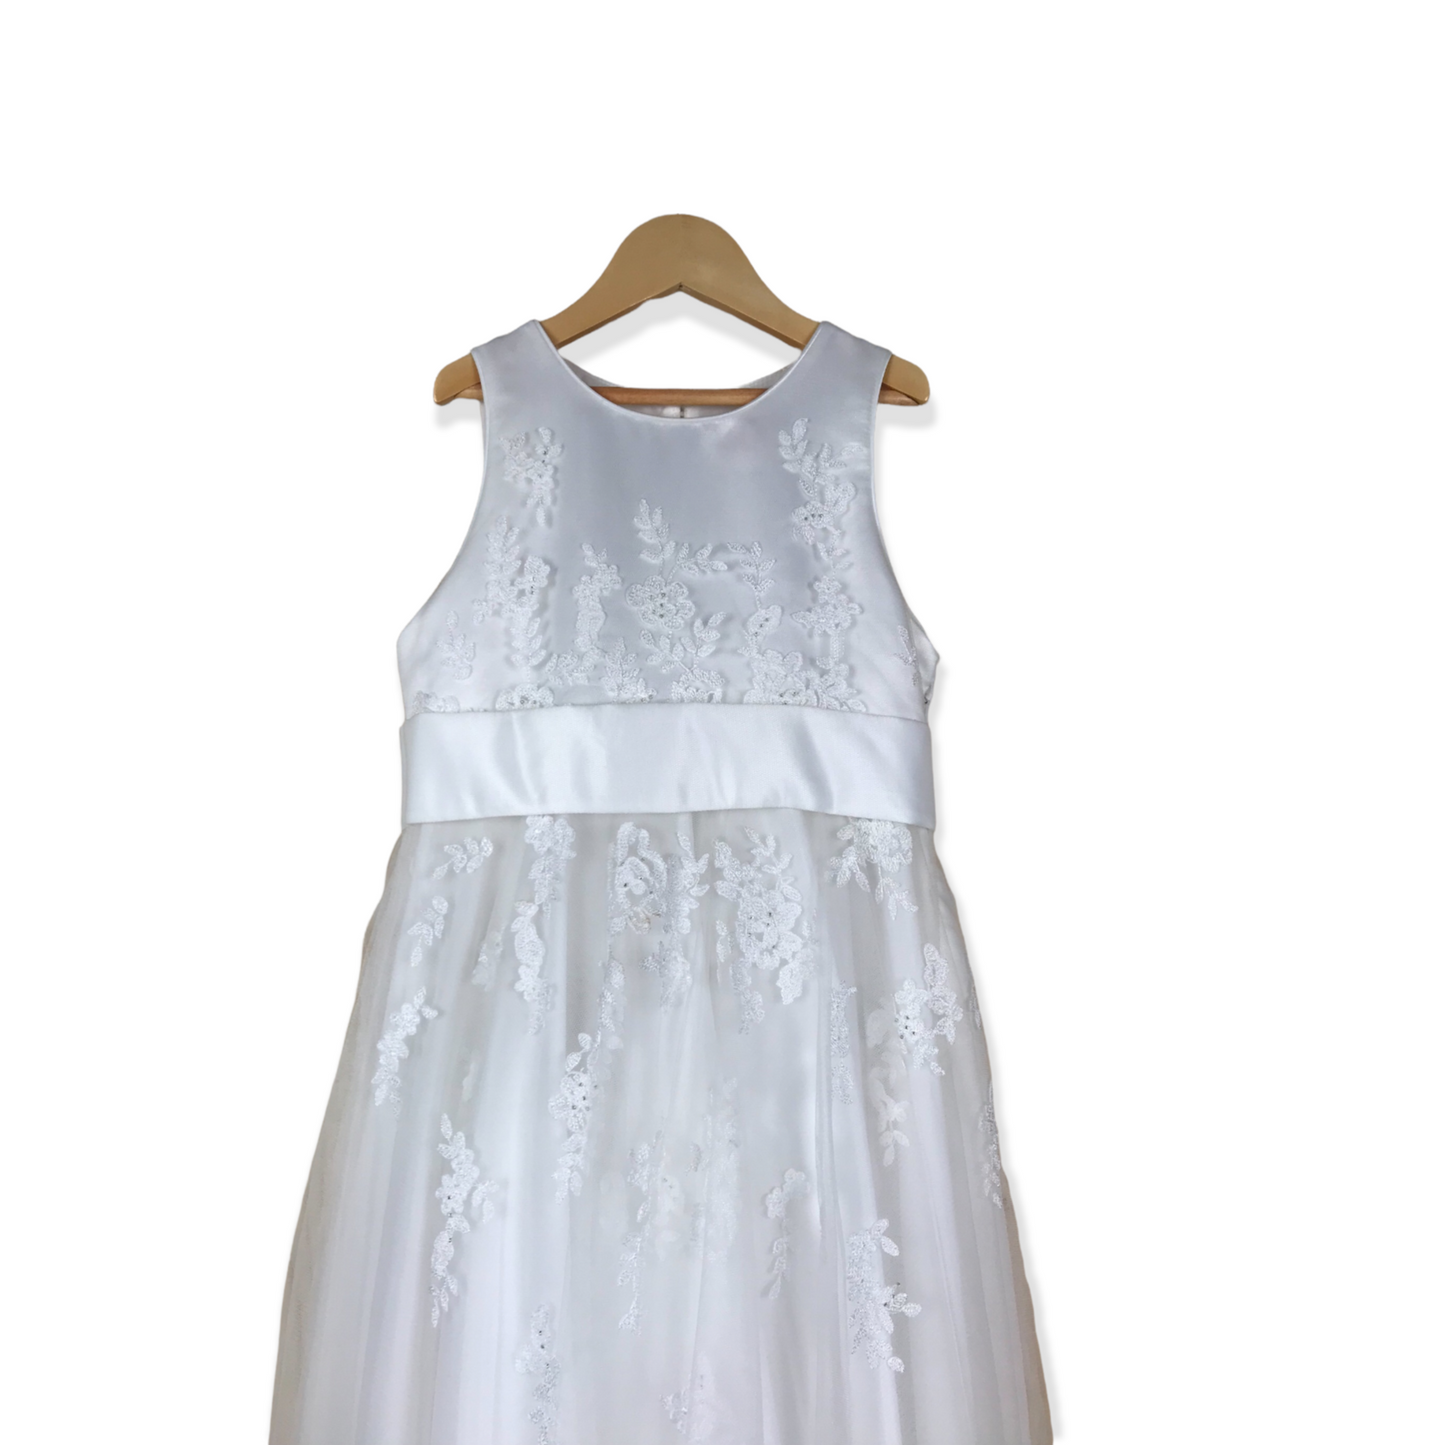 RJR. John Rocha White Embroidery Detailed Tulle Formal Dress Age 4